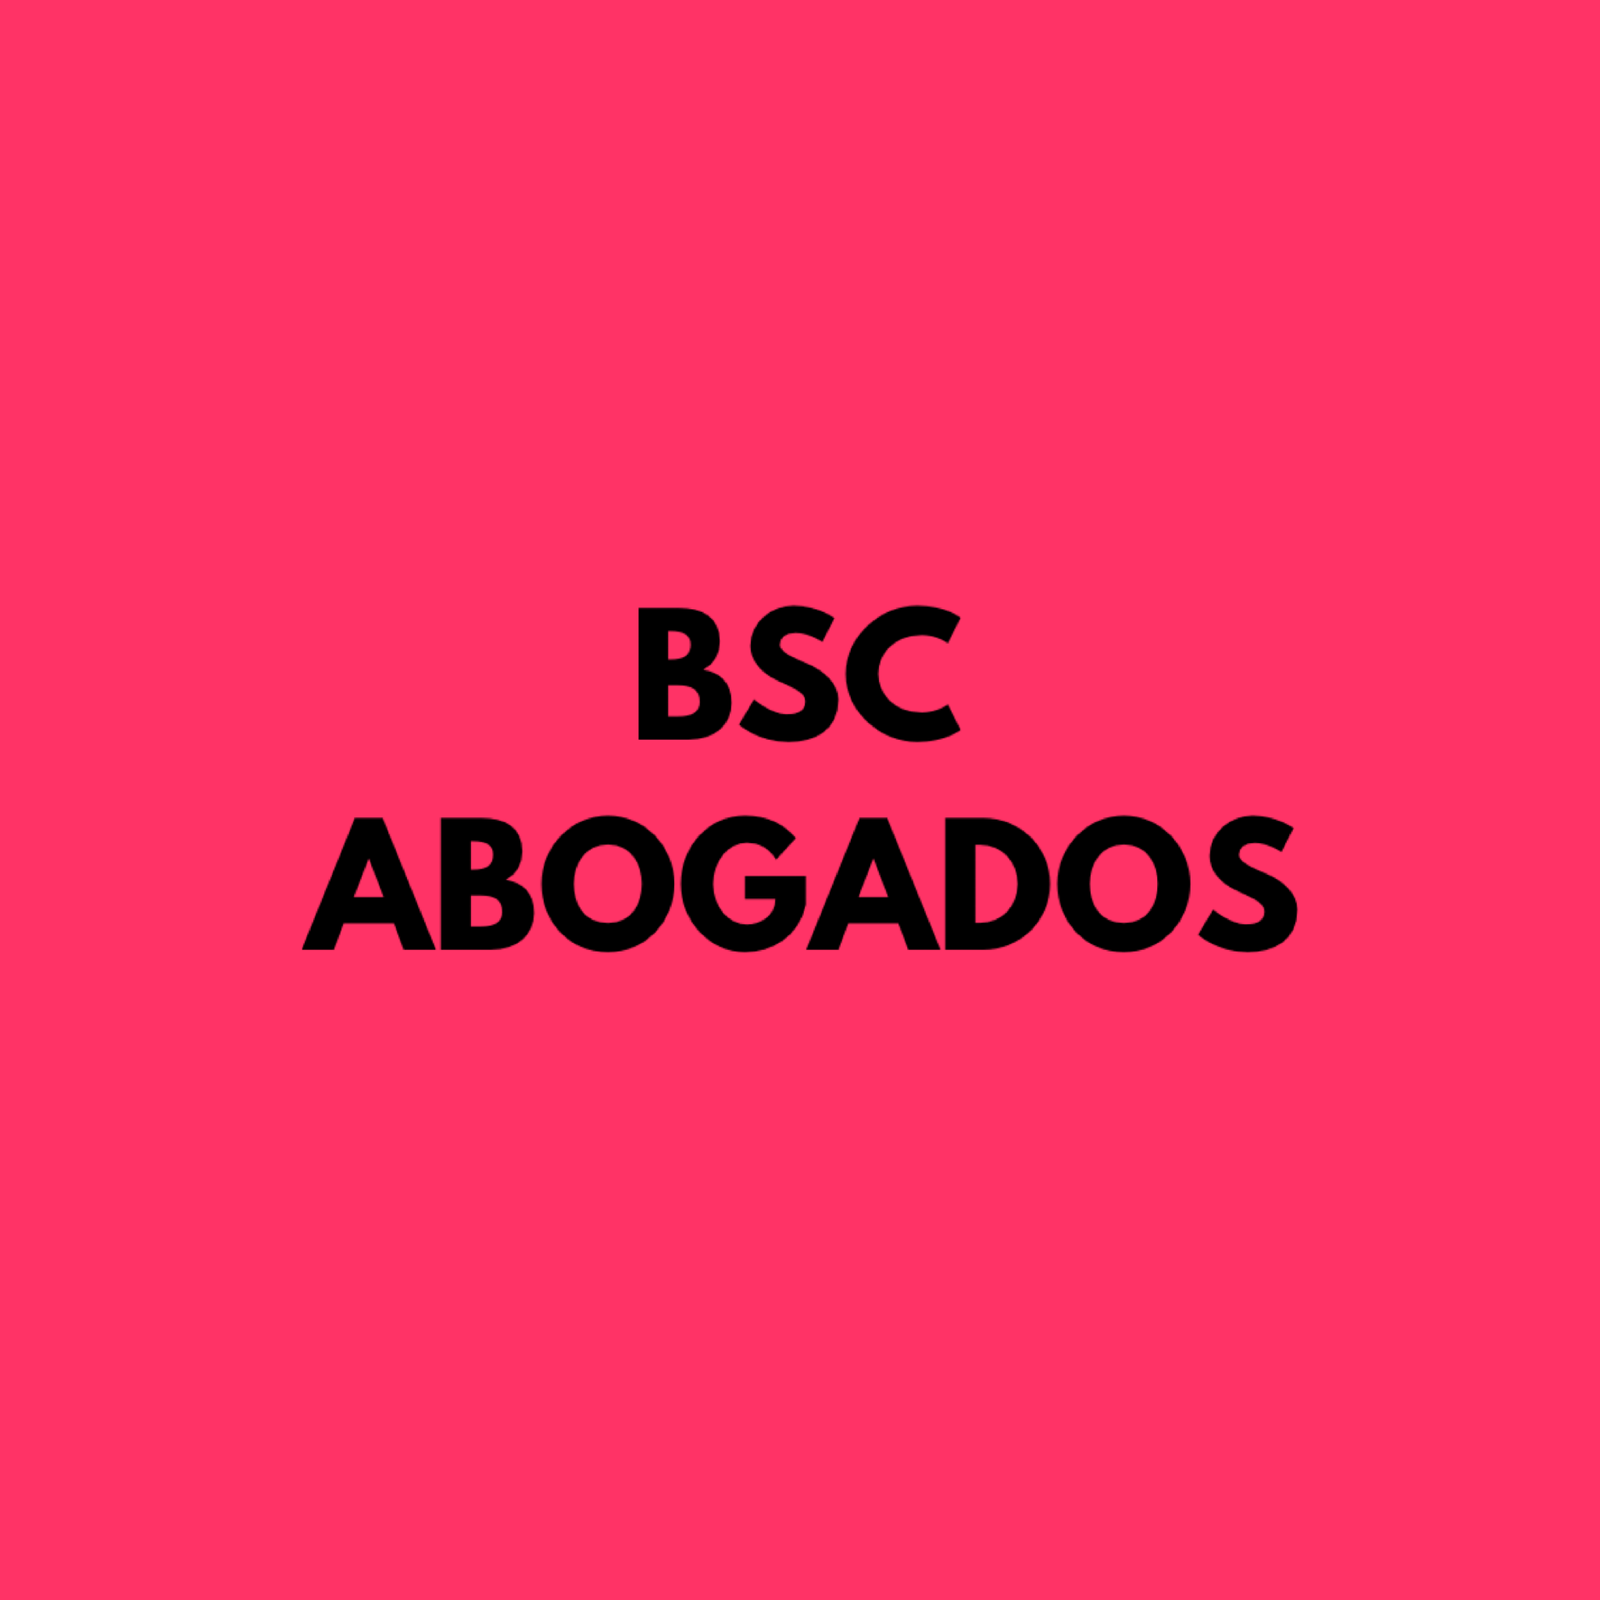 BSC Abogados